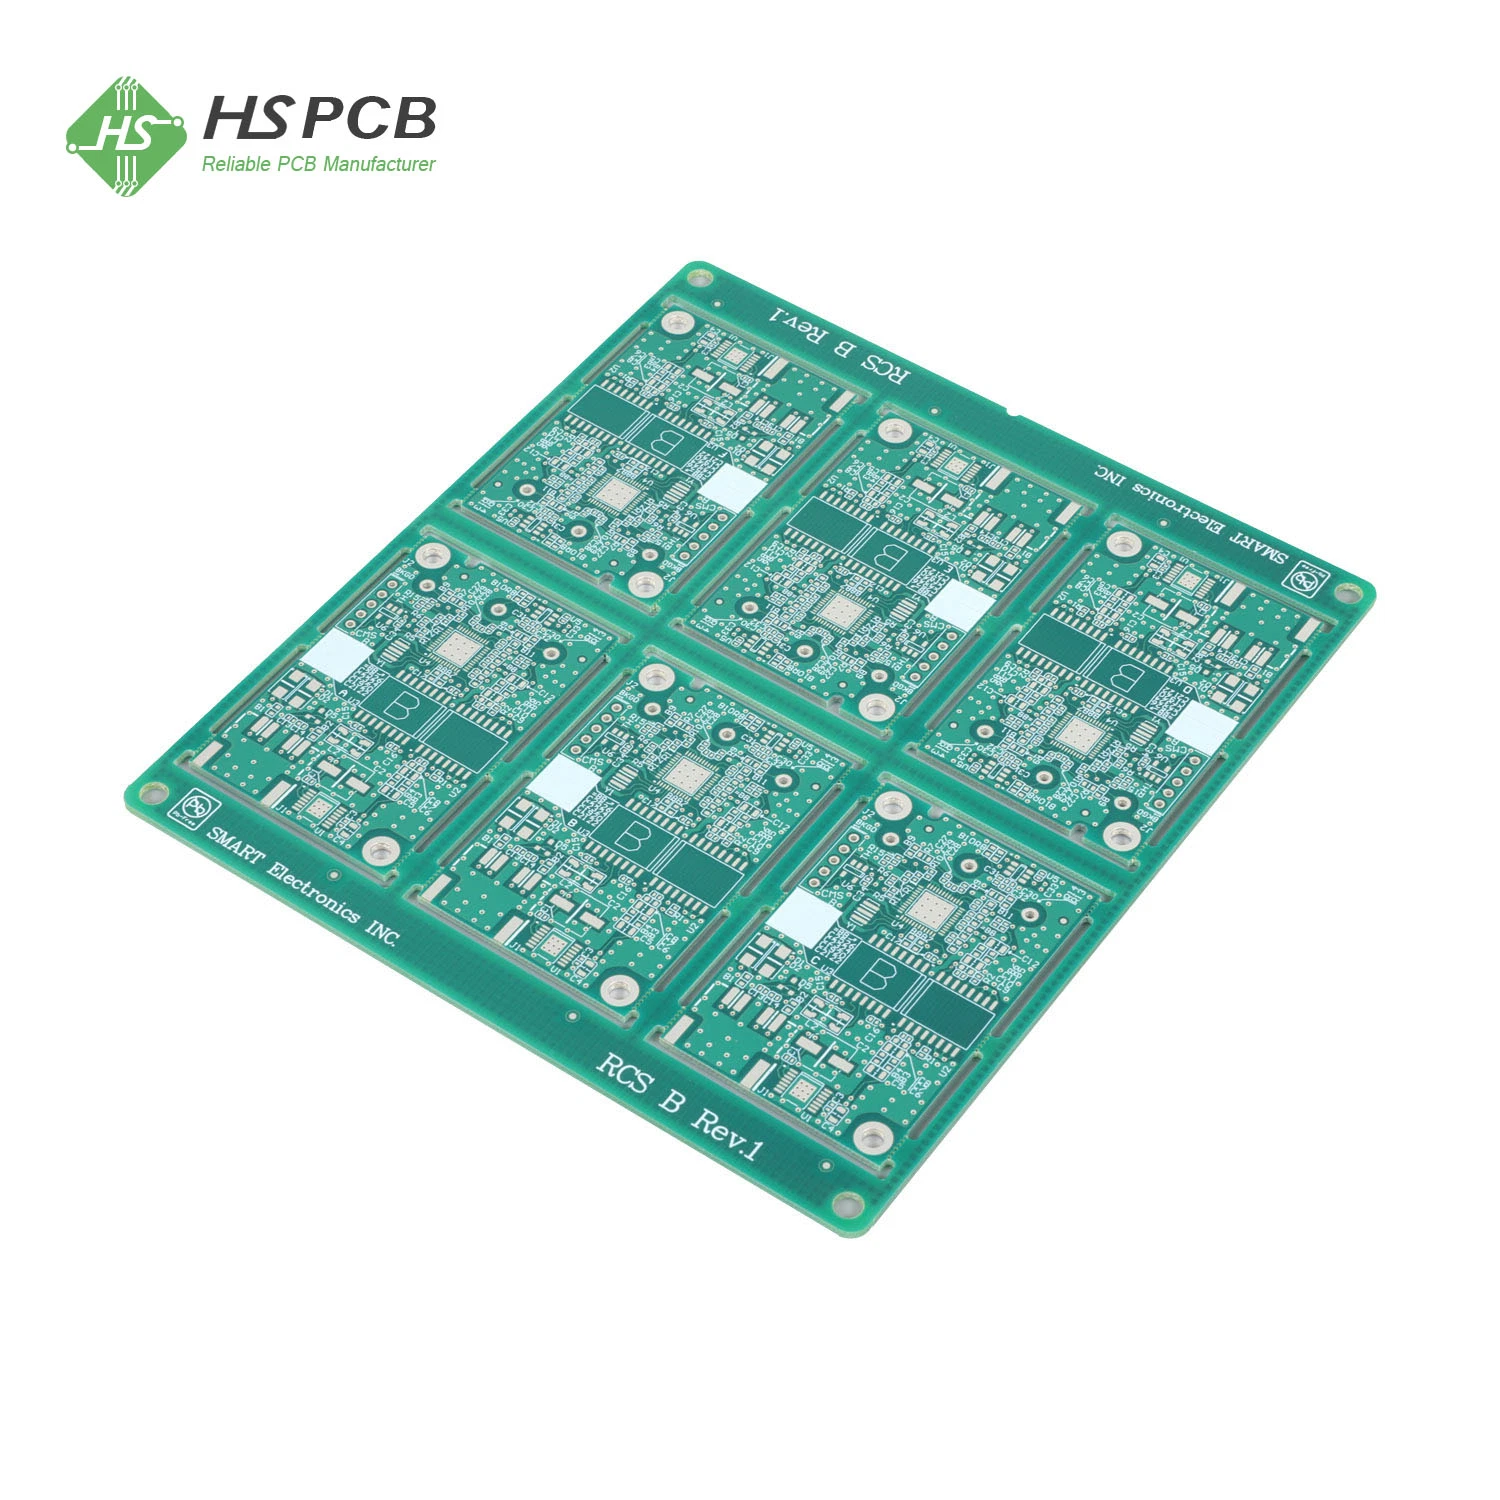 12oz Heavy Copper PCB Board Multilayer Circuit Board Manufacturer

Fabricant de cartes de circuits imprimés multicouches en cuivre lourd de 12 oz.